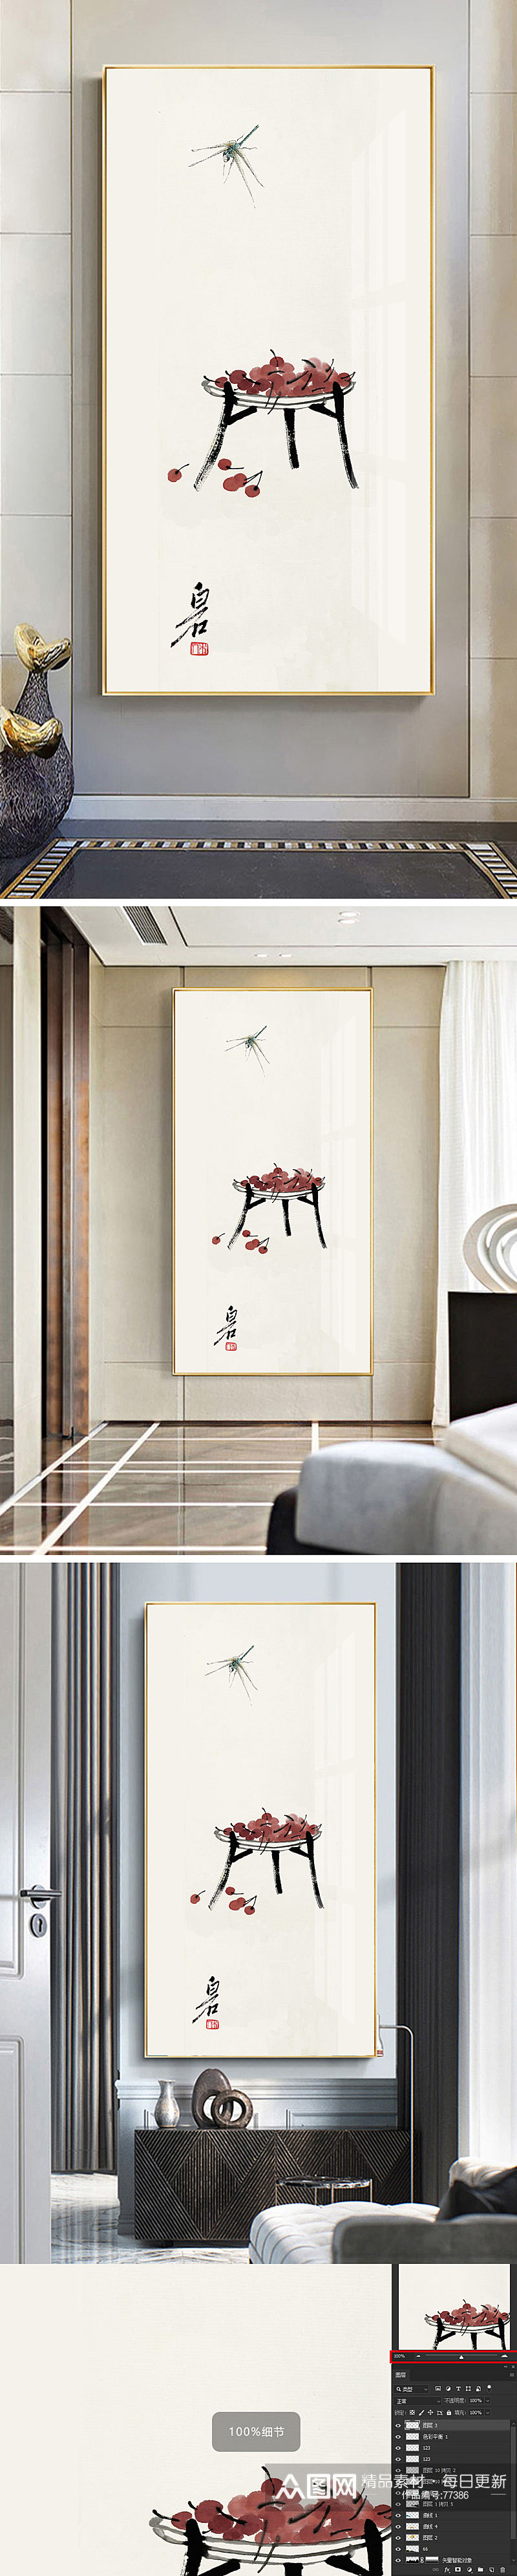 中式传统水墨画蜻蜓装饰画素材